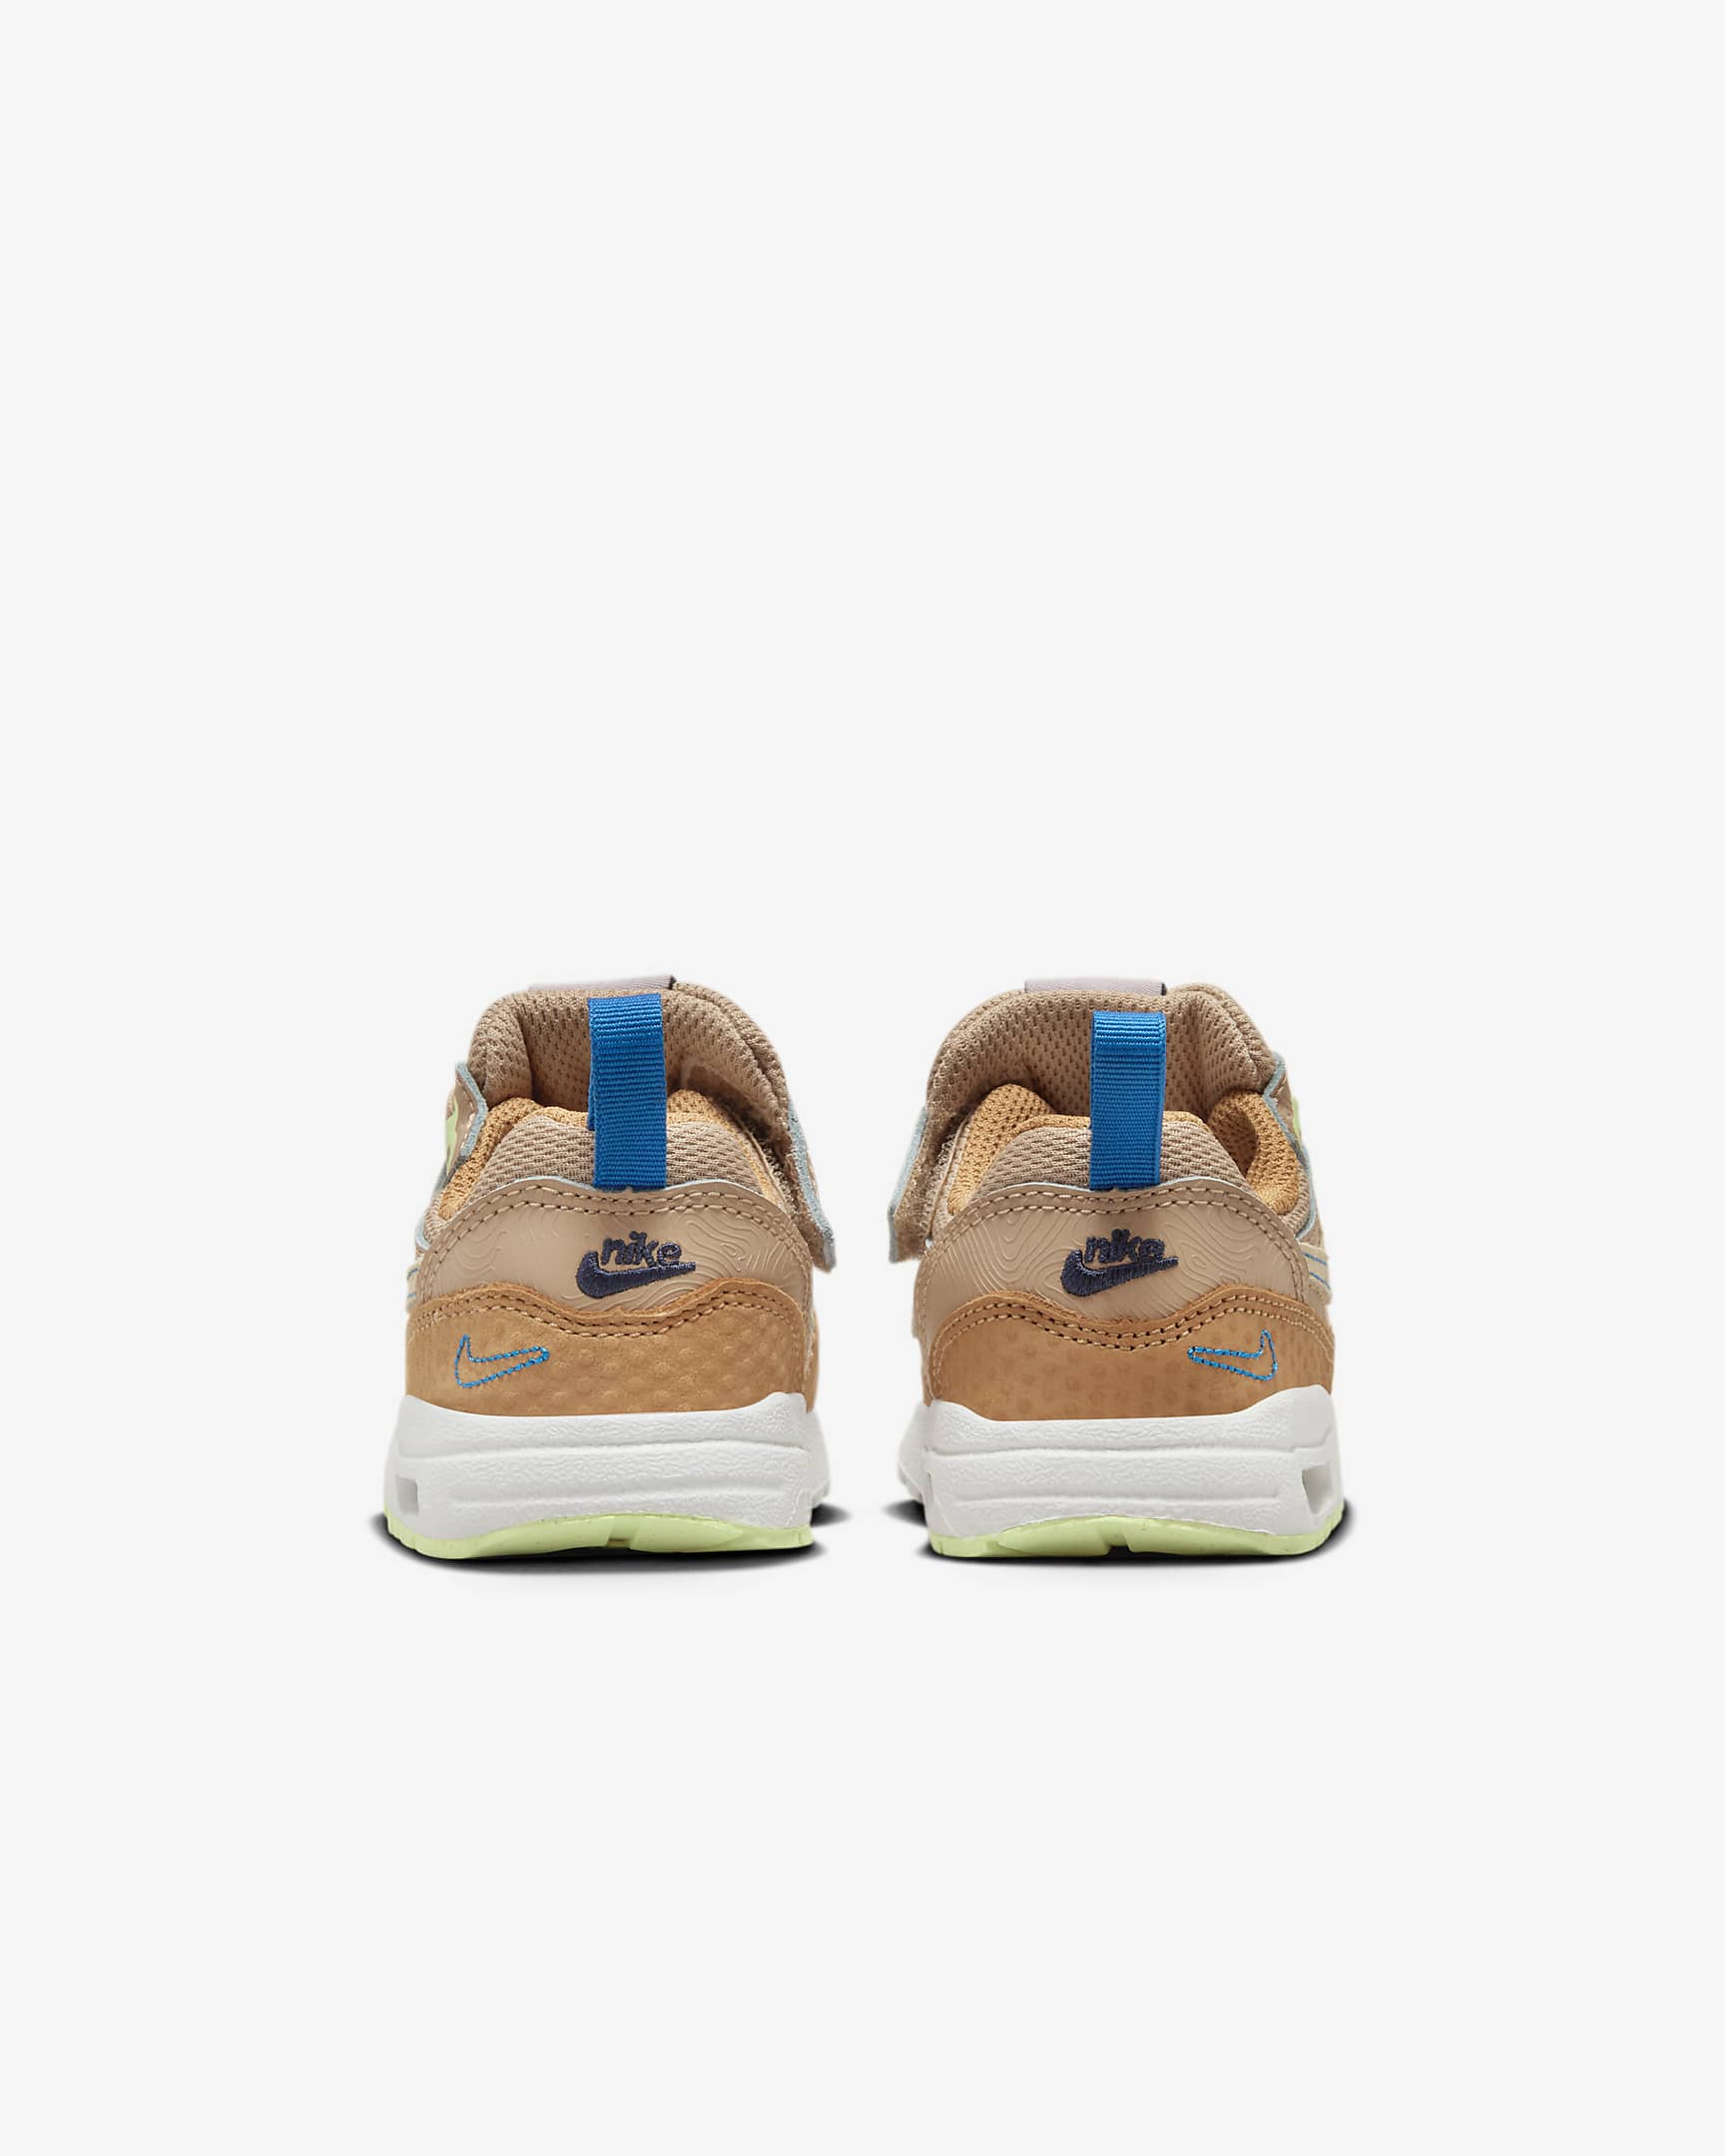 Nike Air Max 1 SE EasyOn Schuh für Babys und Kleinkinder - Hemp/Flax/Coconut Milk